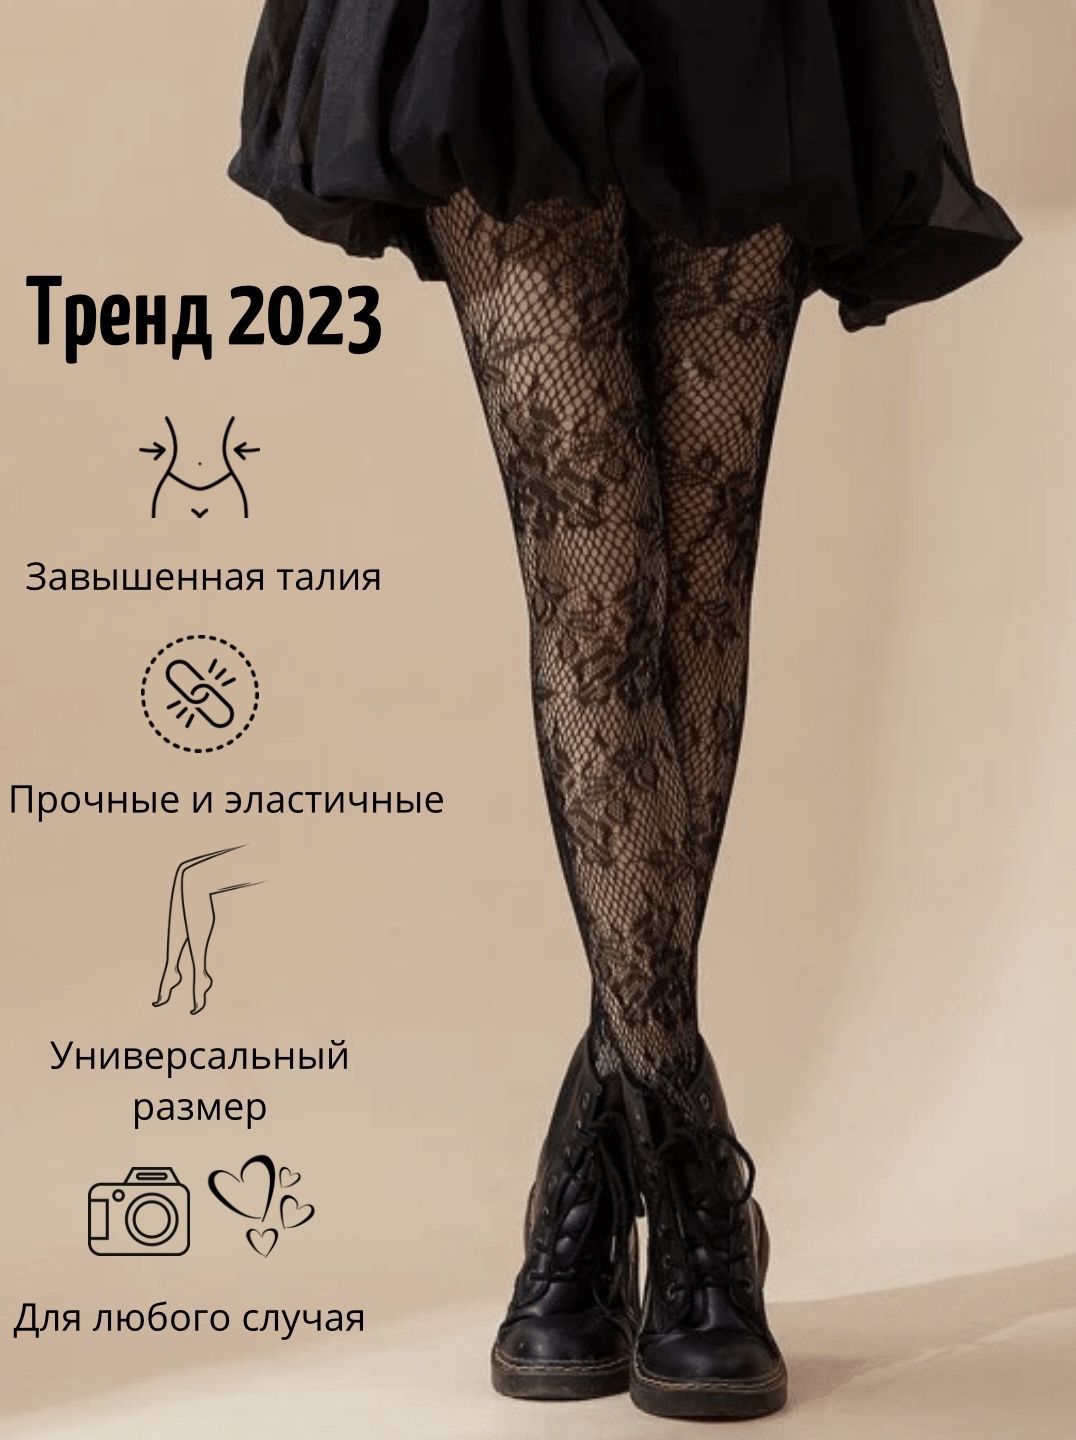 Купить женские колготки и чулки в интернет магазине nordwestspb.ru